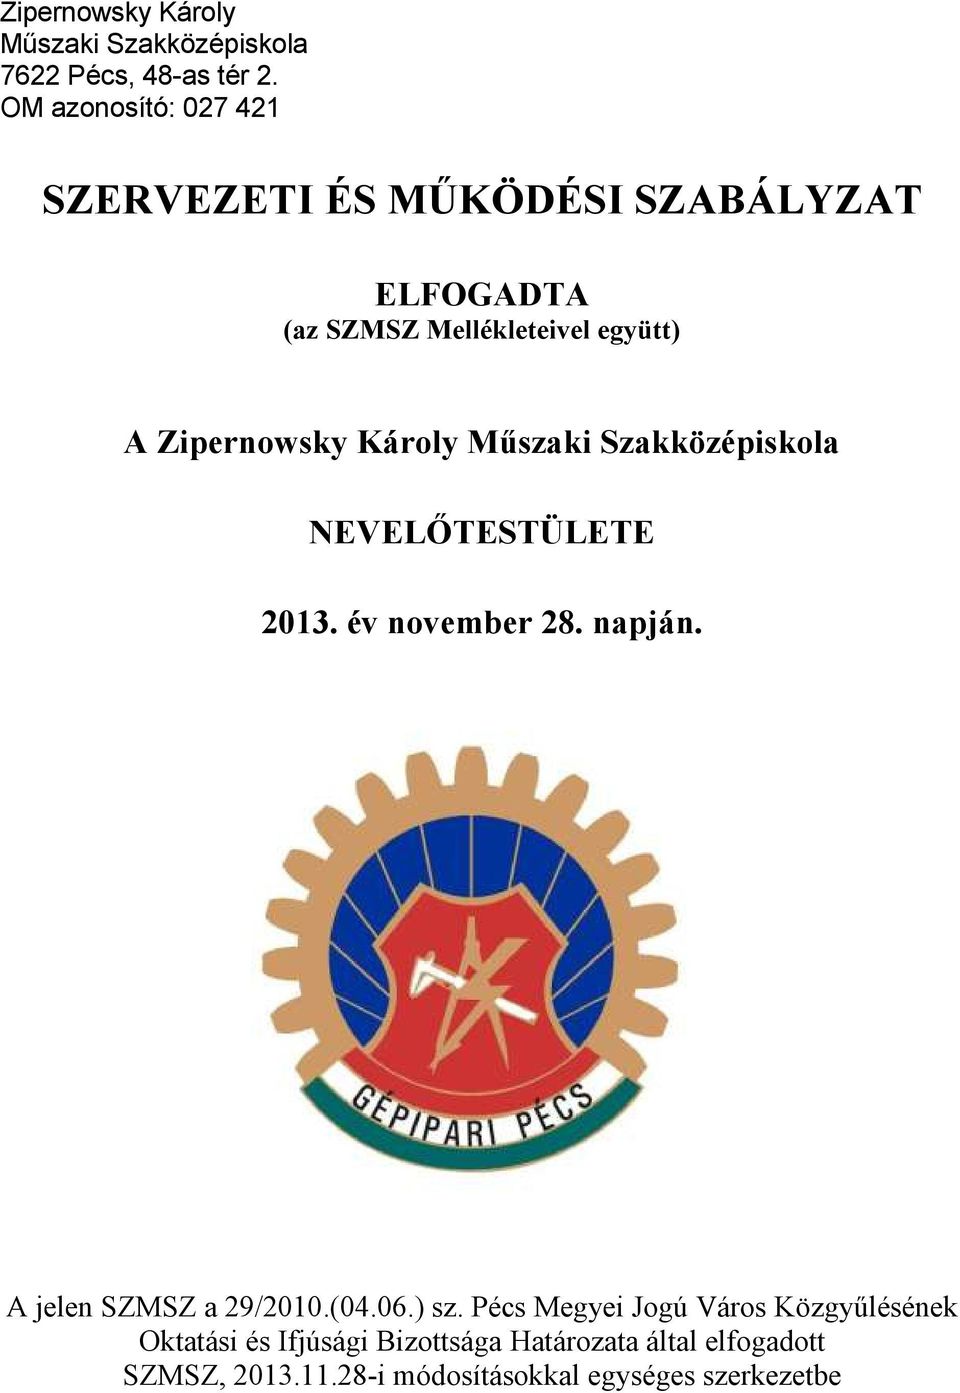 Zipernowsky Károly Műszaki Szakközépiskola NEVELŐTESTÜLETE 2013. év november 28. napján.